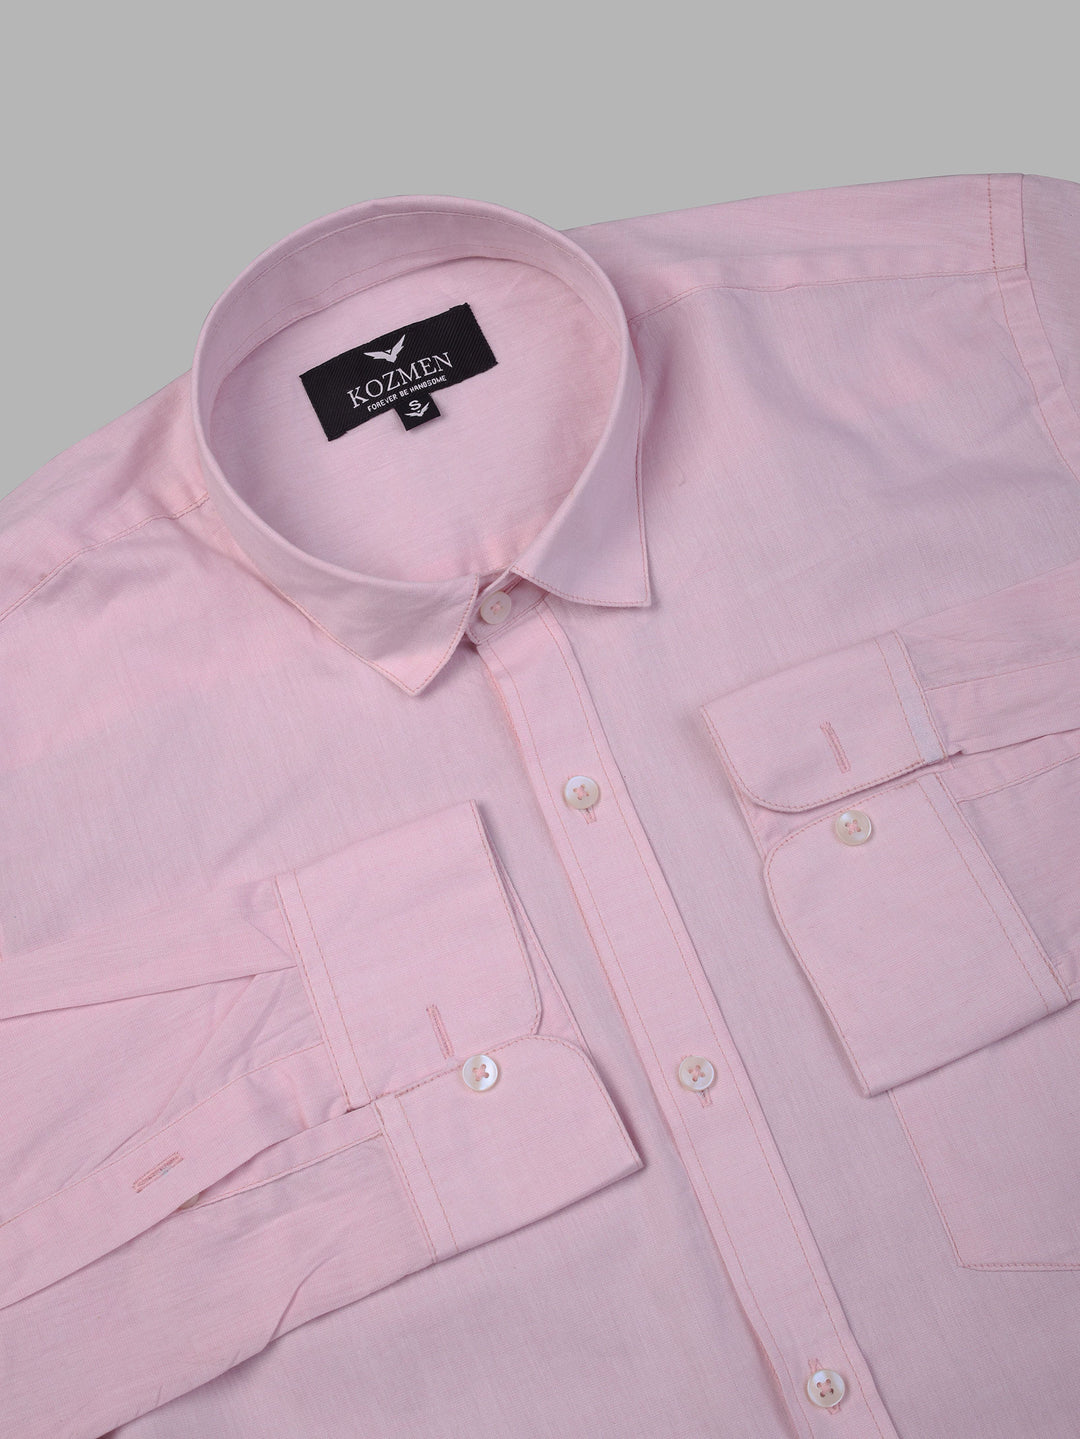 Eton Pink Cotton Shirt